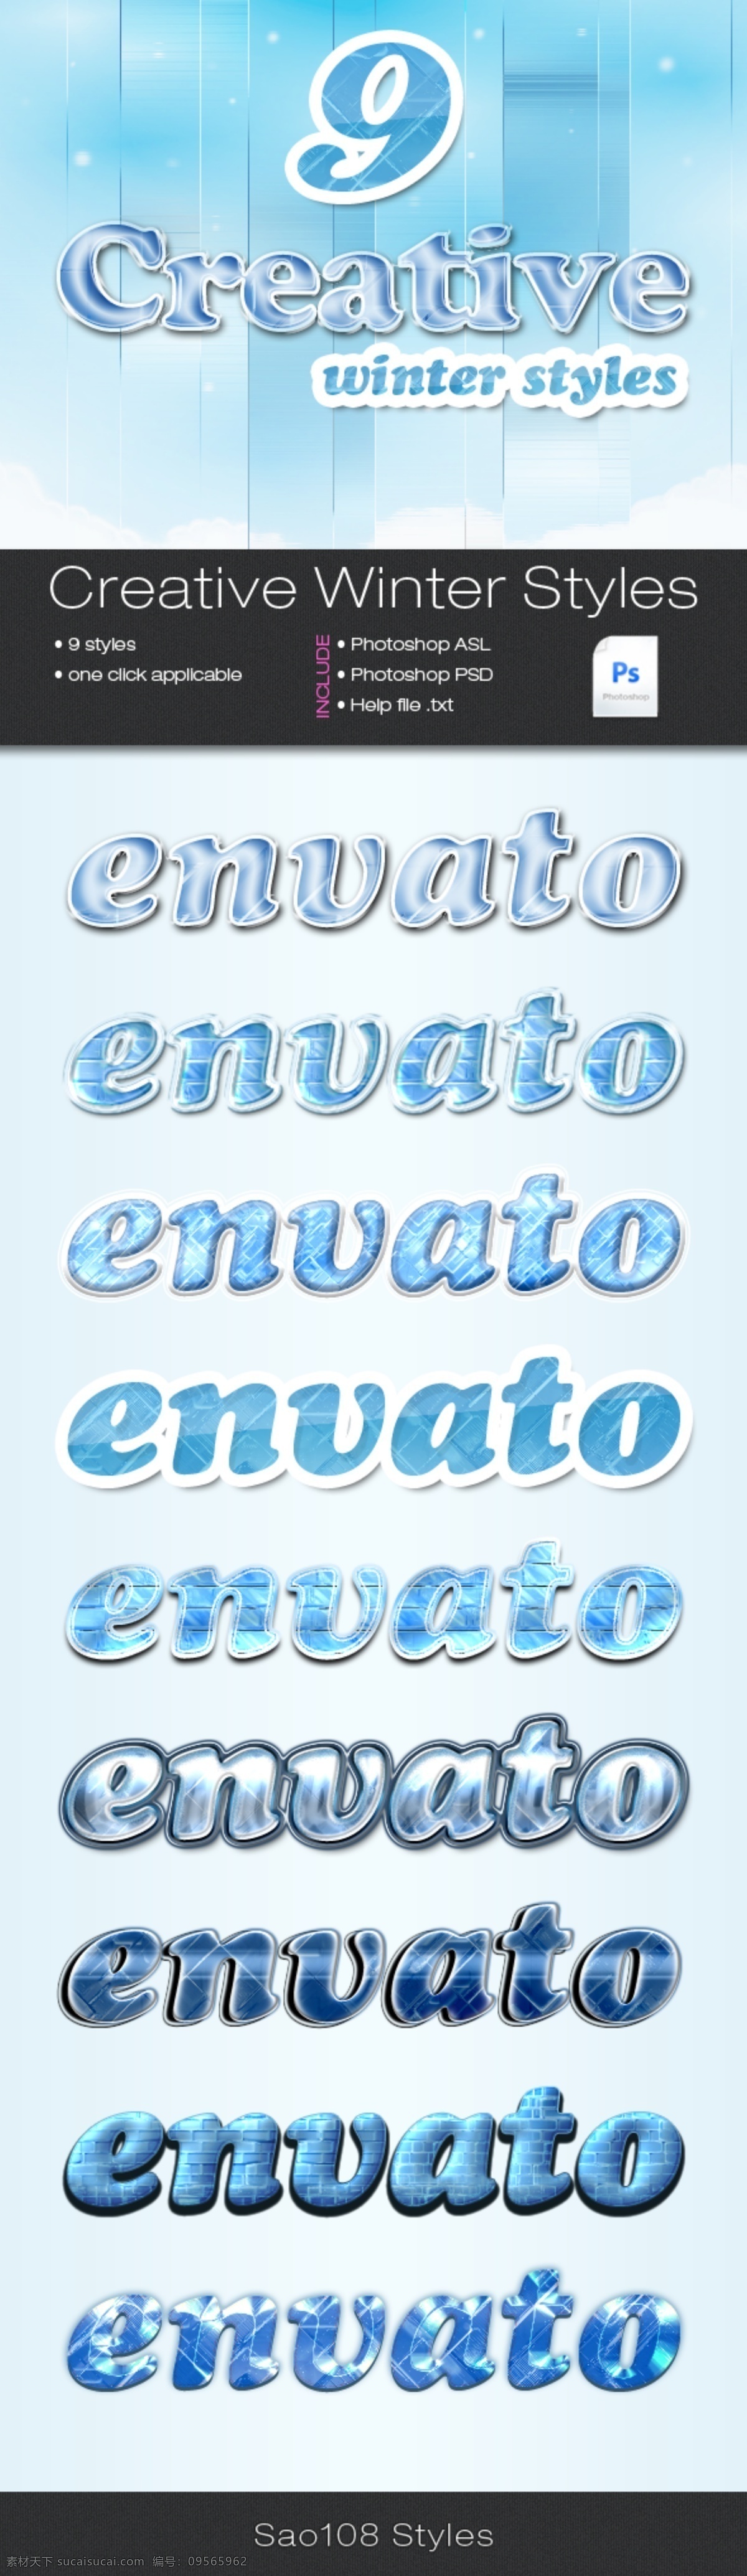 款 冬季 蓝色 冰 墙 图案 艺术 字 样式 ps样式 ps素材 字体样式 冬季样式 艺术字 字体设计 蓝色样式 冰墙样式 立体字样式 冬季字体 描边字体 winter styles